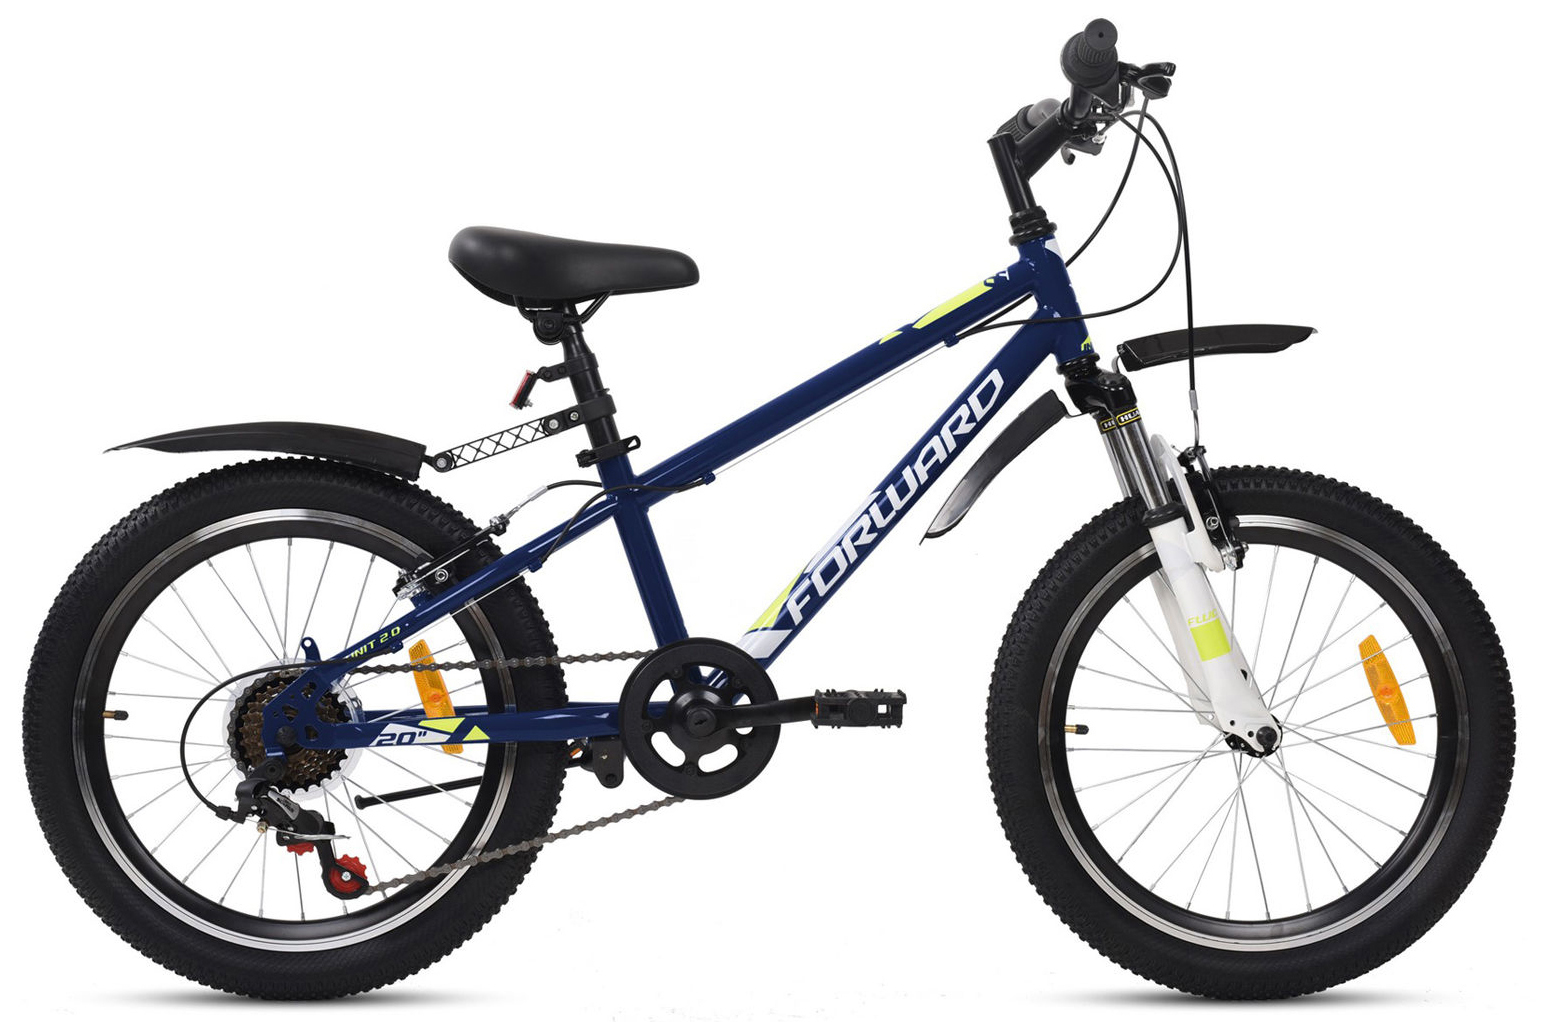  Отзывы о Детском велосипеде Forward Unit 20 2.0 2020